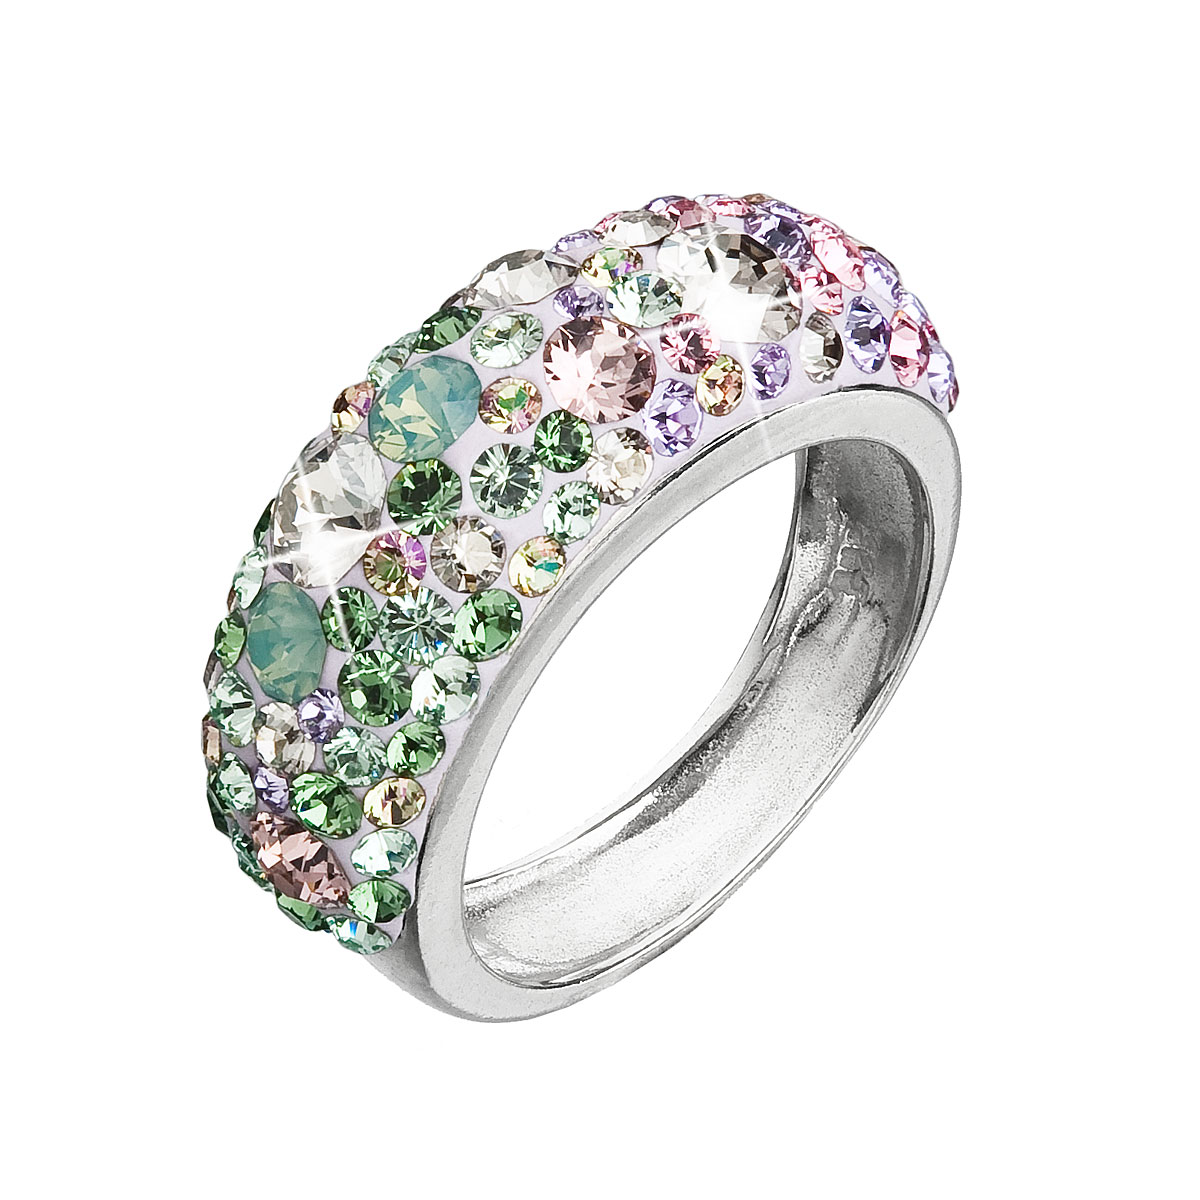 Evolution Group Stříbrný prsten s krystaly Swarovski mix barev fialová zelená růžová 35031.3 sakura